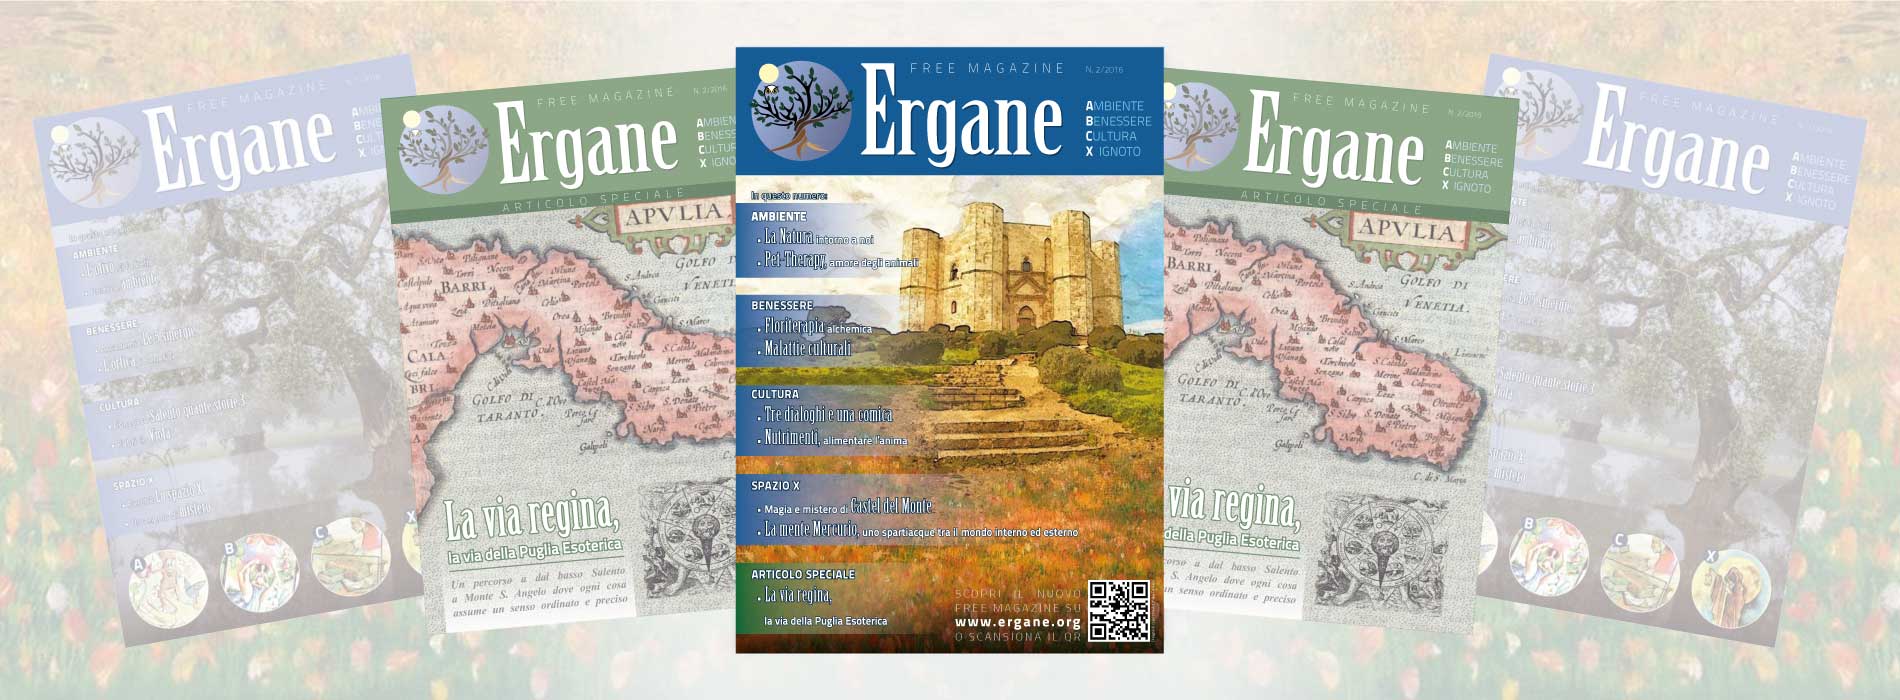 Ergane Web magazine